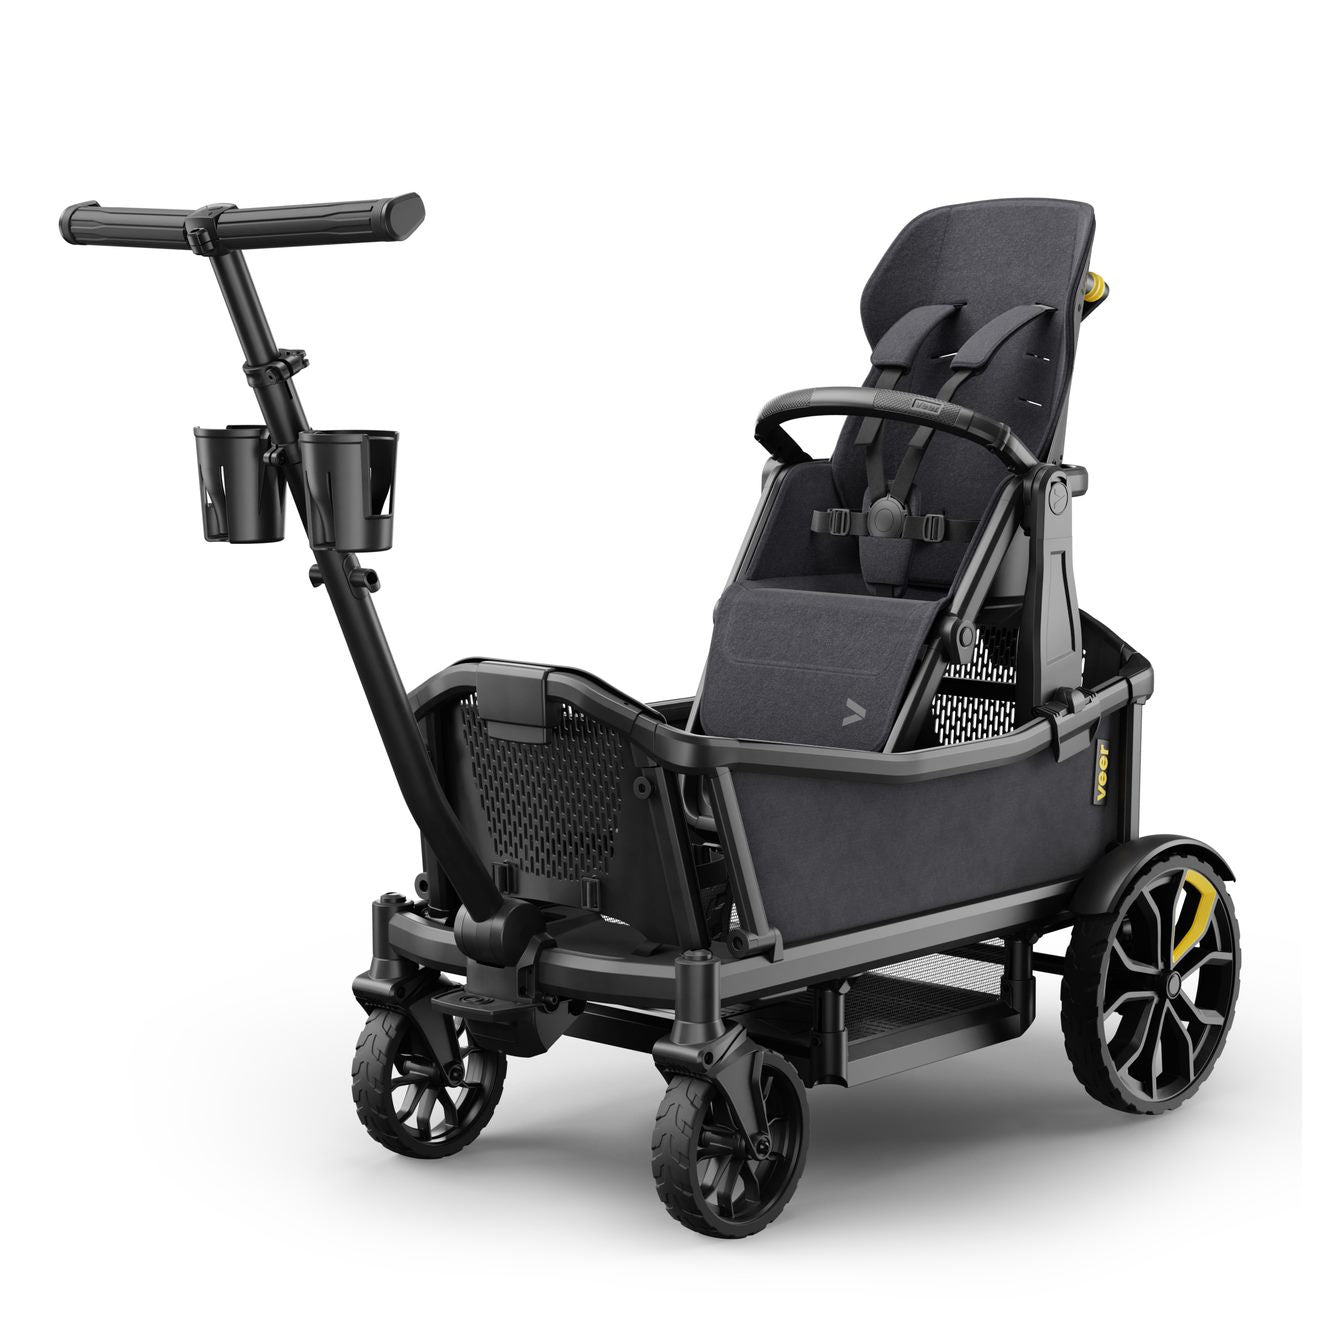 Produktbild: Veer Cruiser Adapter von Veer im Onlineshop von dasMikruli - Dein Shop für Baby Erstausstattung